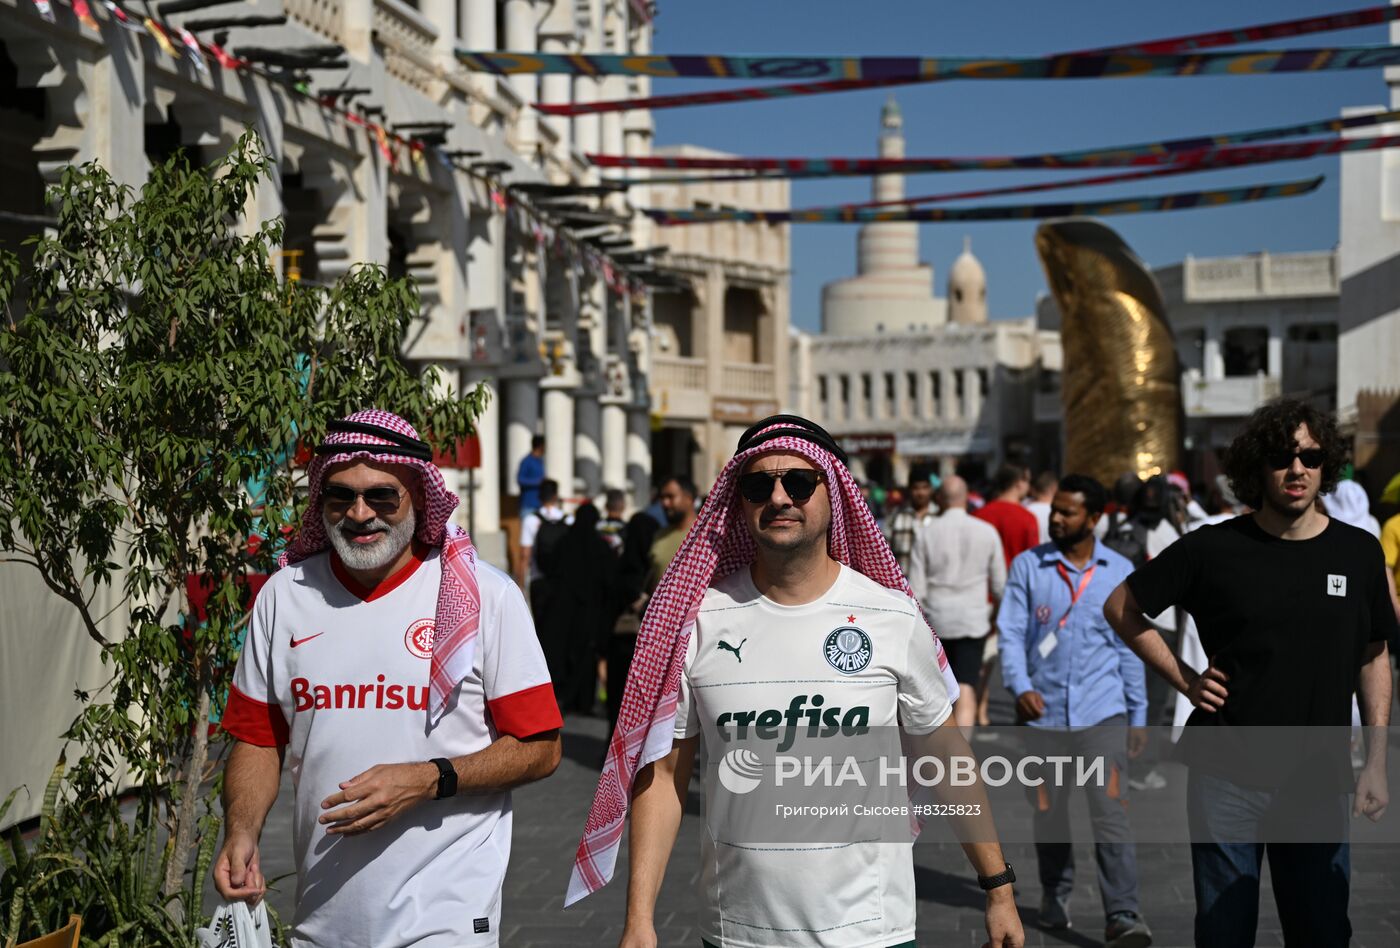 Доха во время ЧМ-2022 по футболу